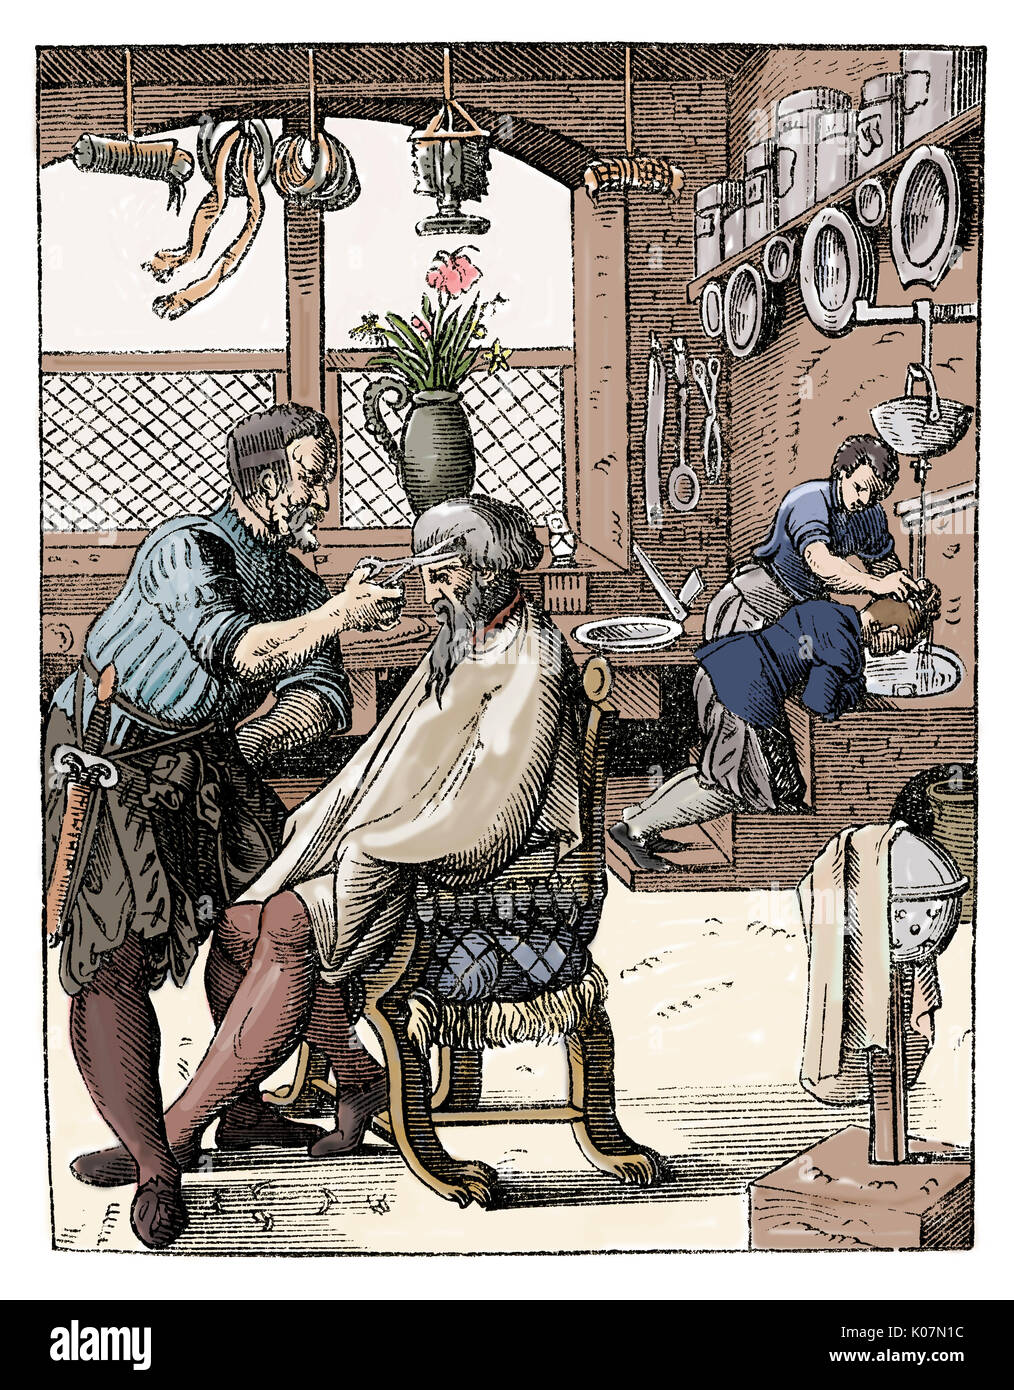 Herr an der Friseure erhält einen Haarschnitt, während ein Chap im Hintergrund seine Haare gewaschen. 16. jahrhundert Stockfoto